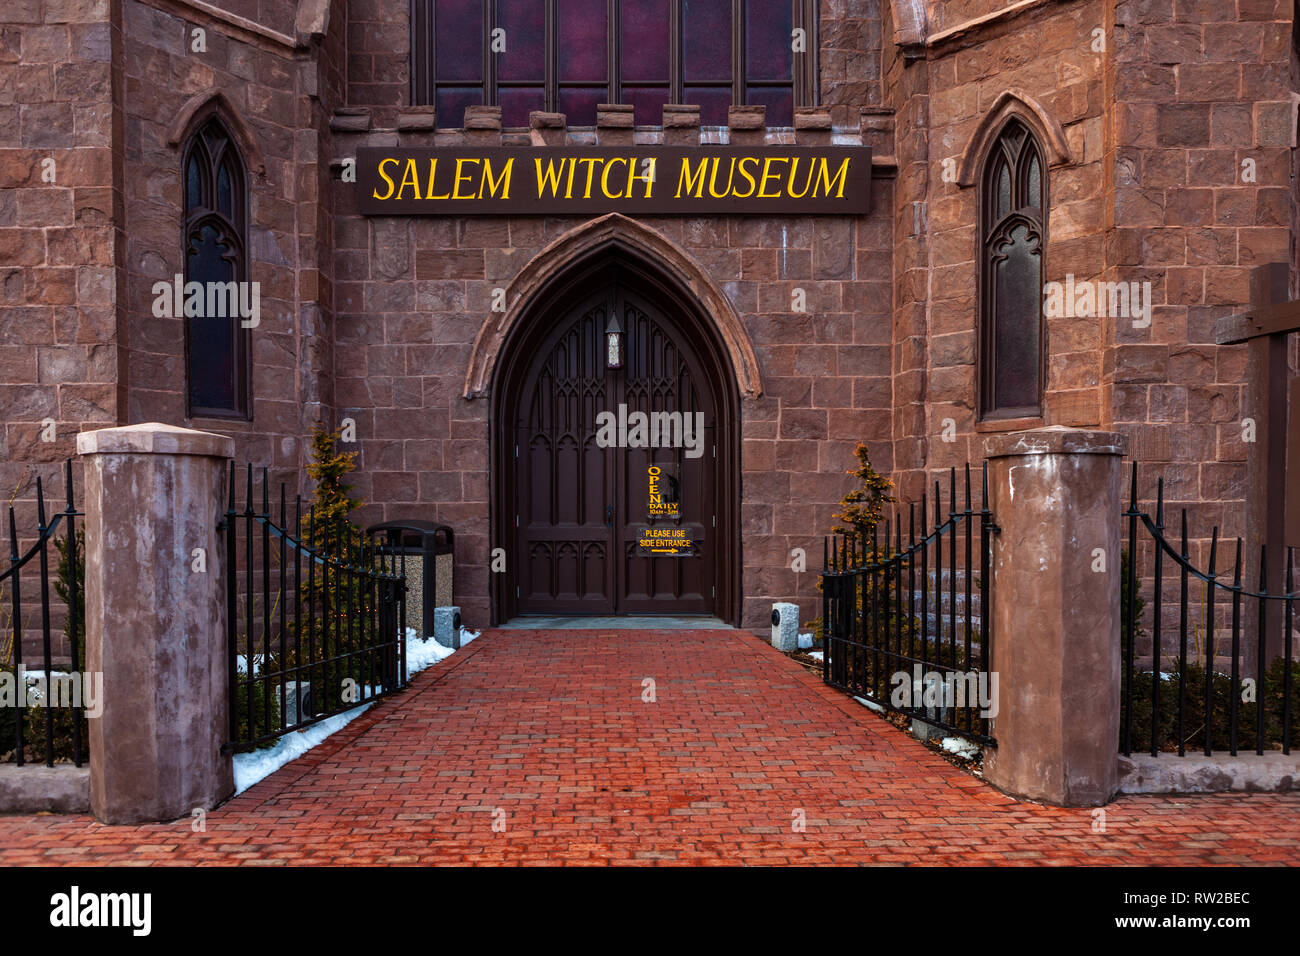 Dieses berühmten Museum befindet sich in einem gotischen Stil, New England Kirche art Gebäude und ist beliebt bei den Bürgern und Touristen. Stockfoto